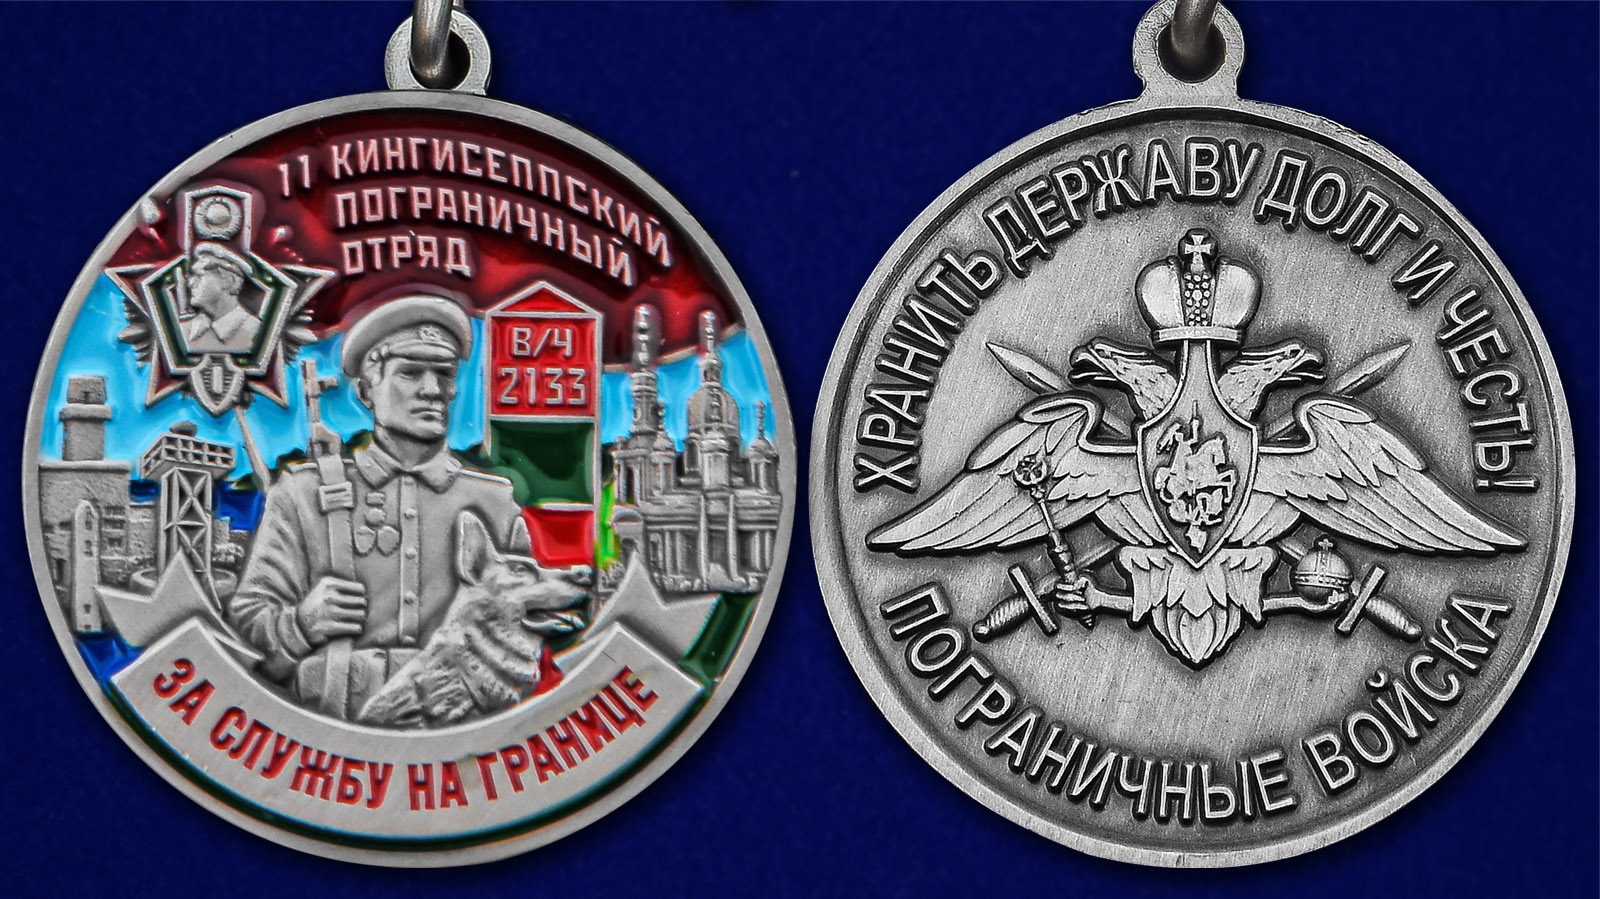 Описание медали "За службу в Кингисеппском пограничном отряде"